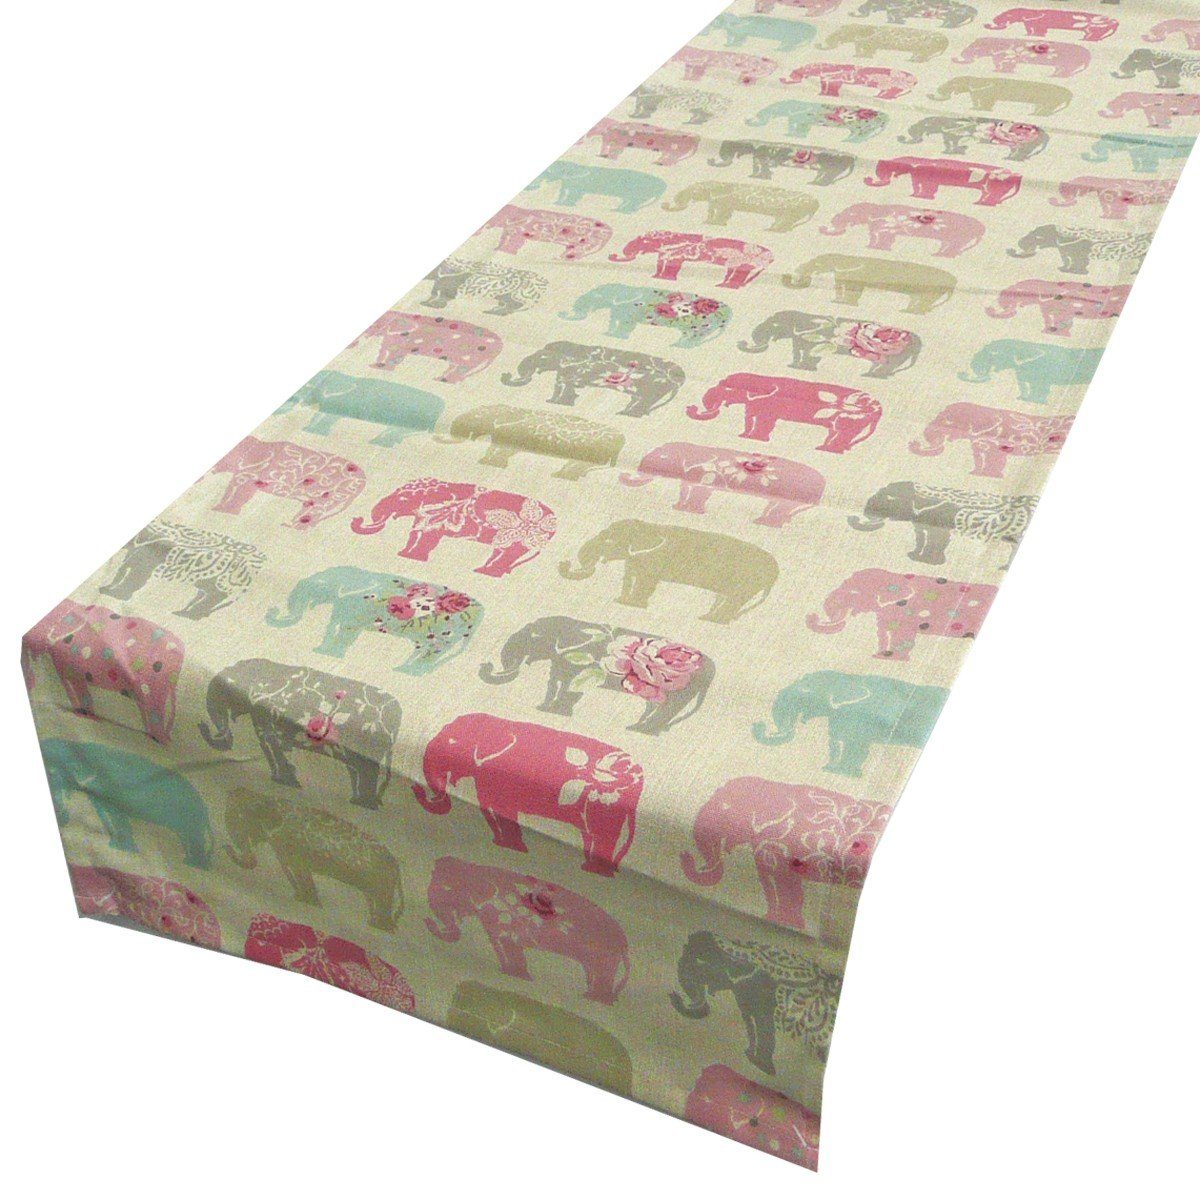 SCHÖNER LEBEN. Tischläufer Tischläufer rosa 40x160cm Pastell Elefanten türkis